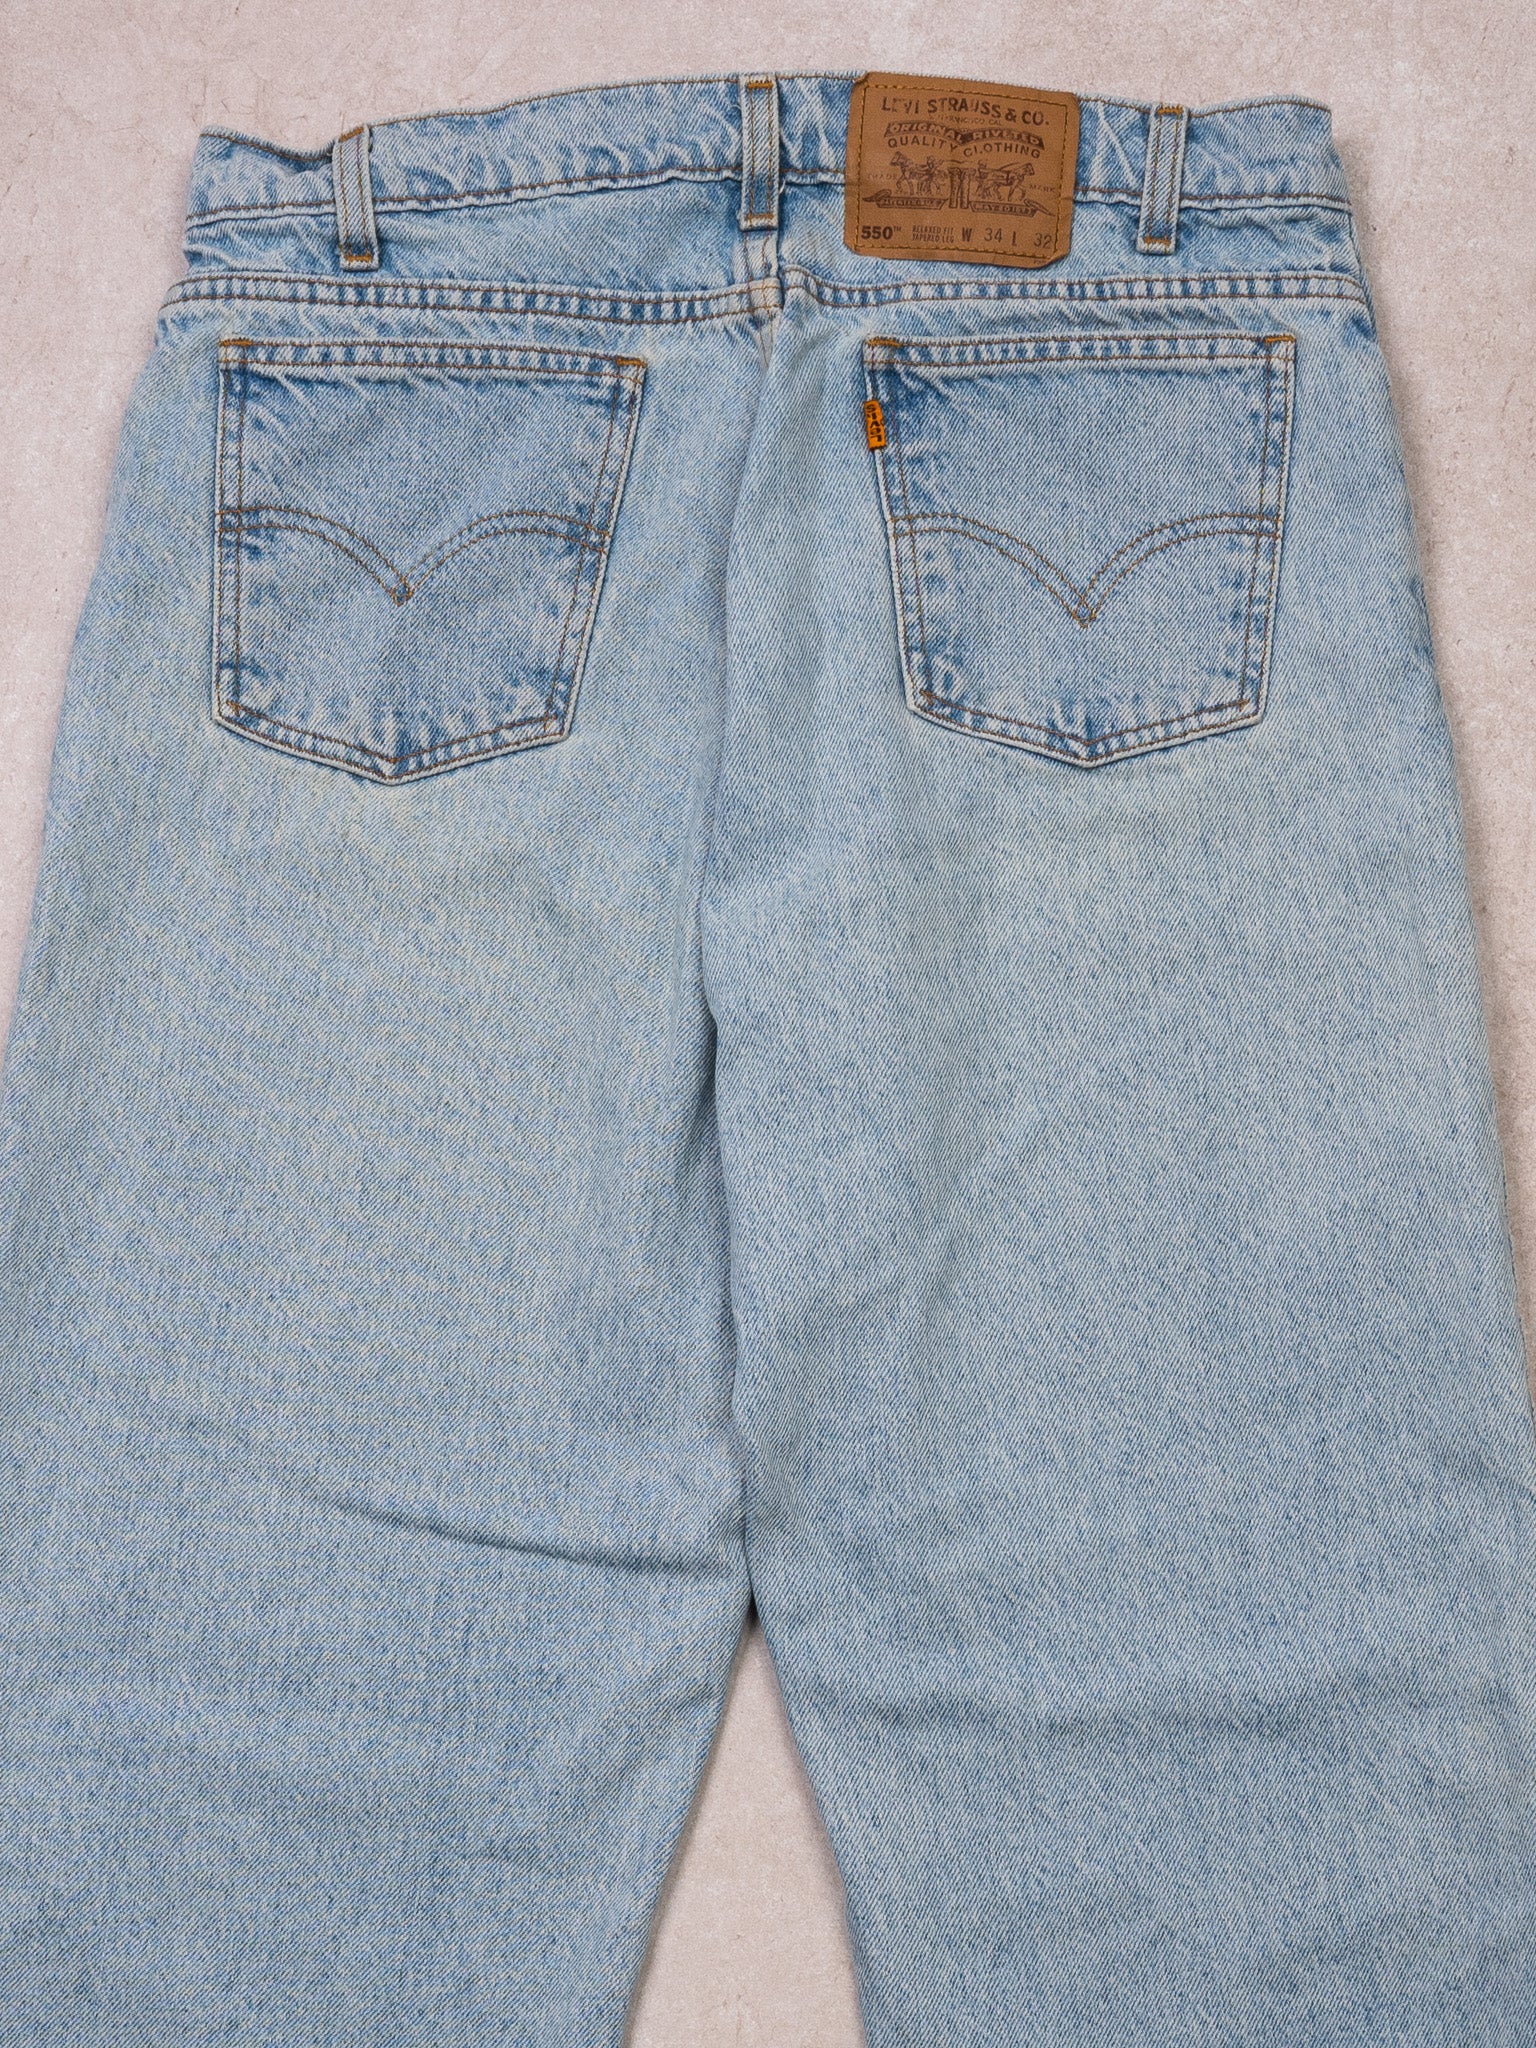 Vintage 1970s Light Blue Levi 550 Relax Fit Jeans (30 x 32)